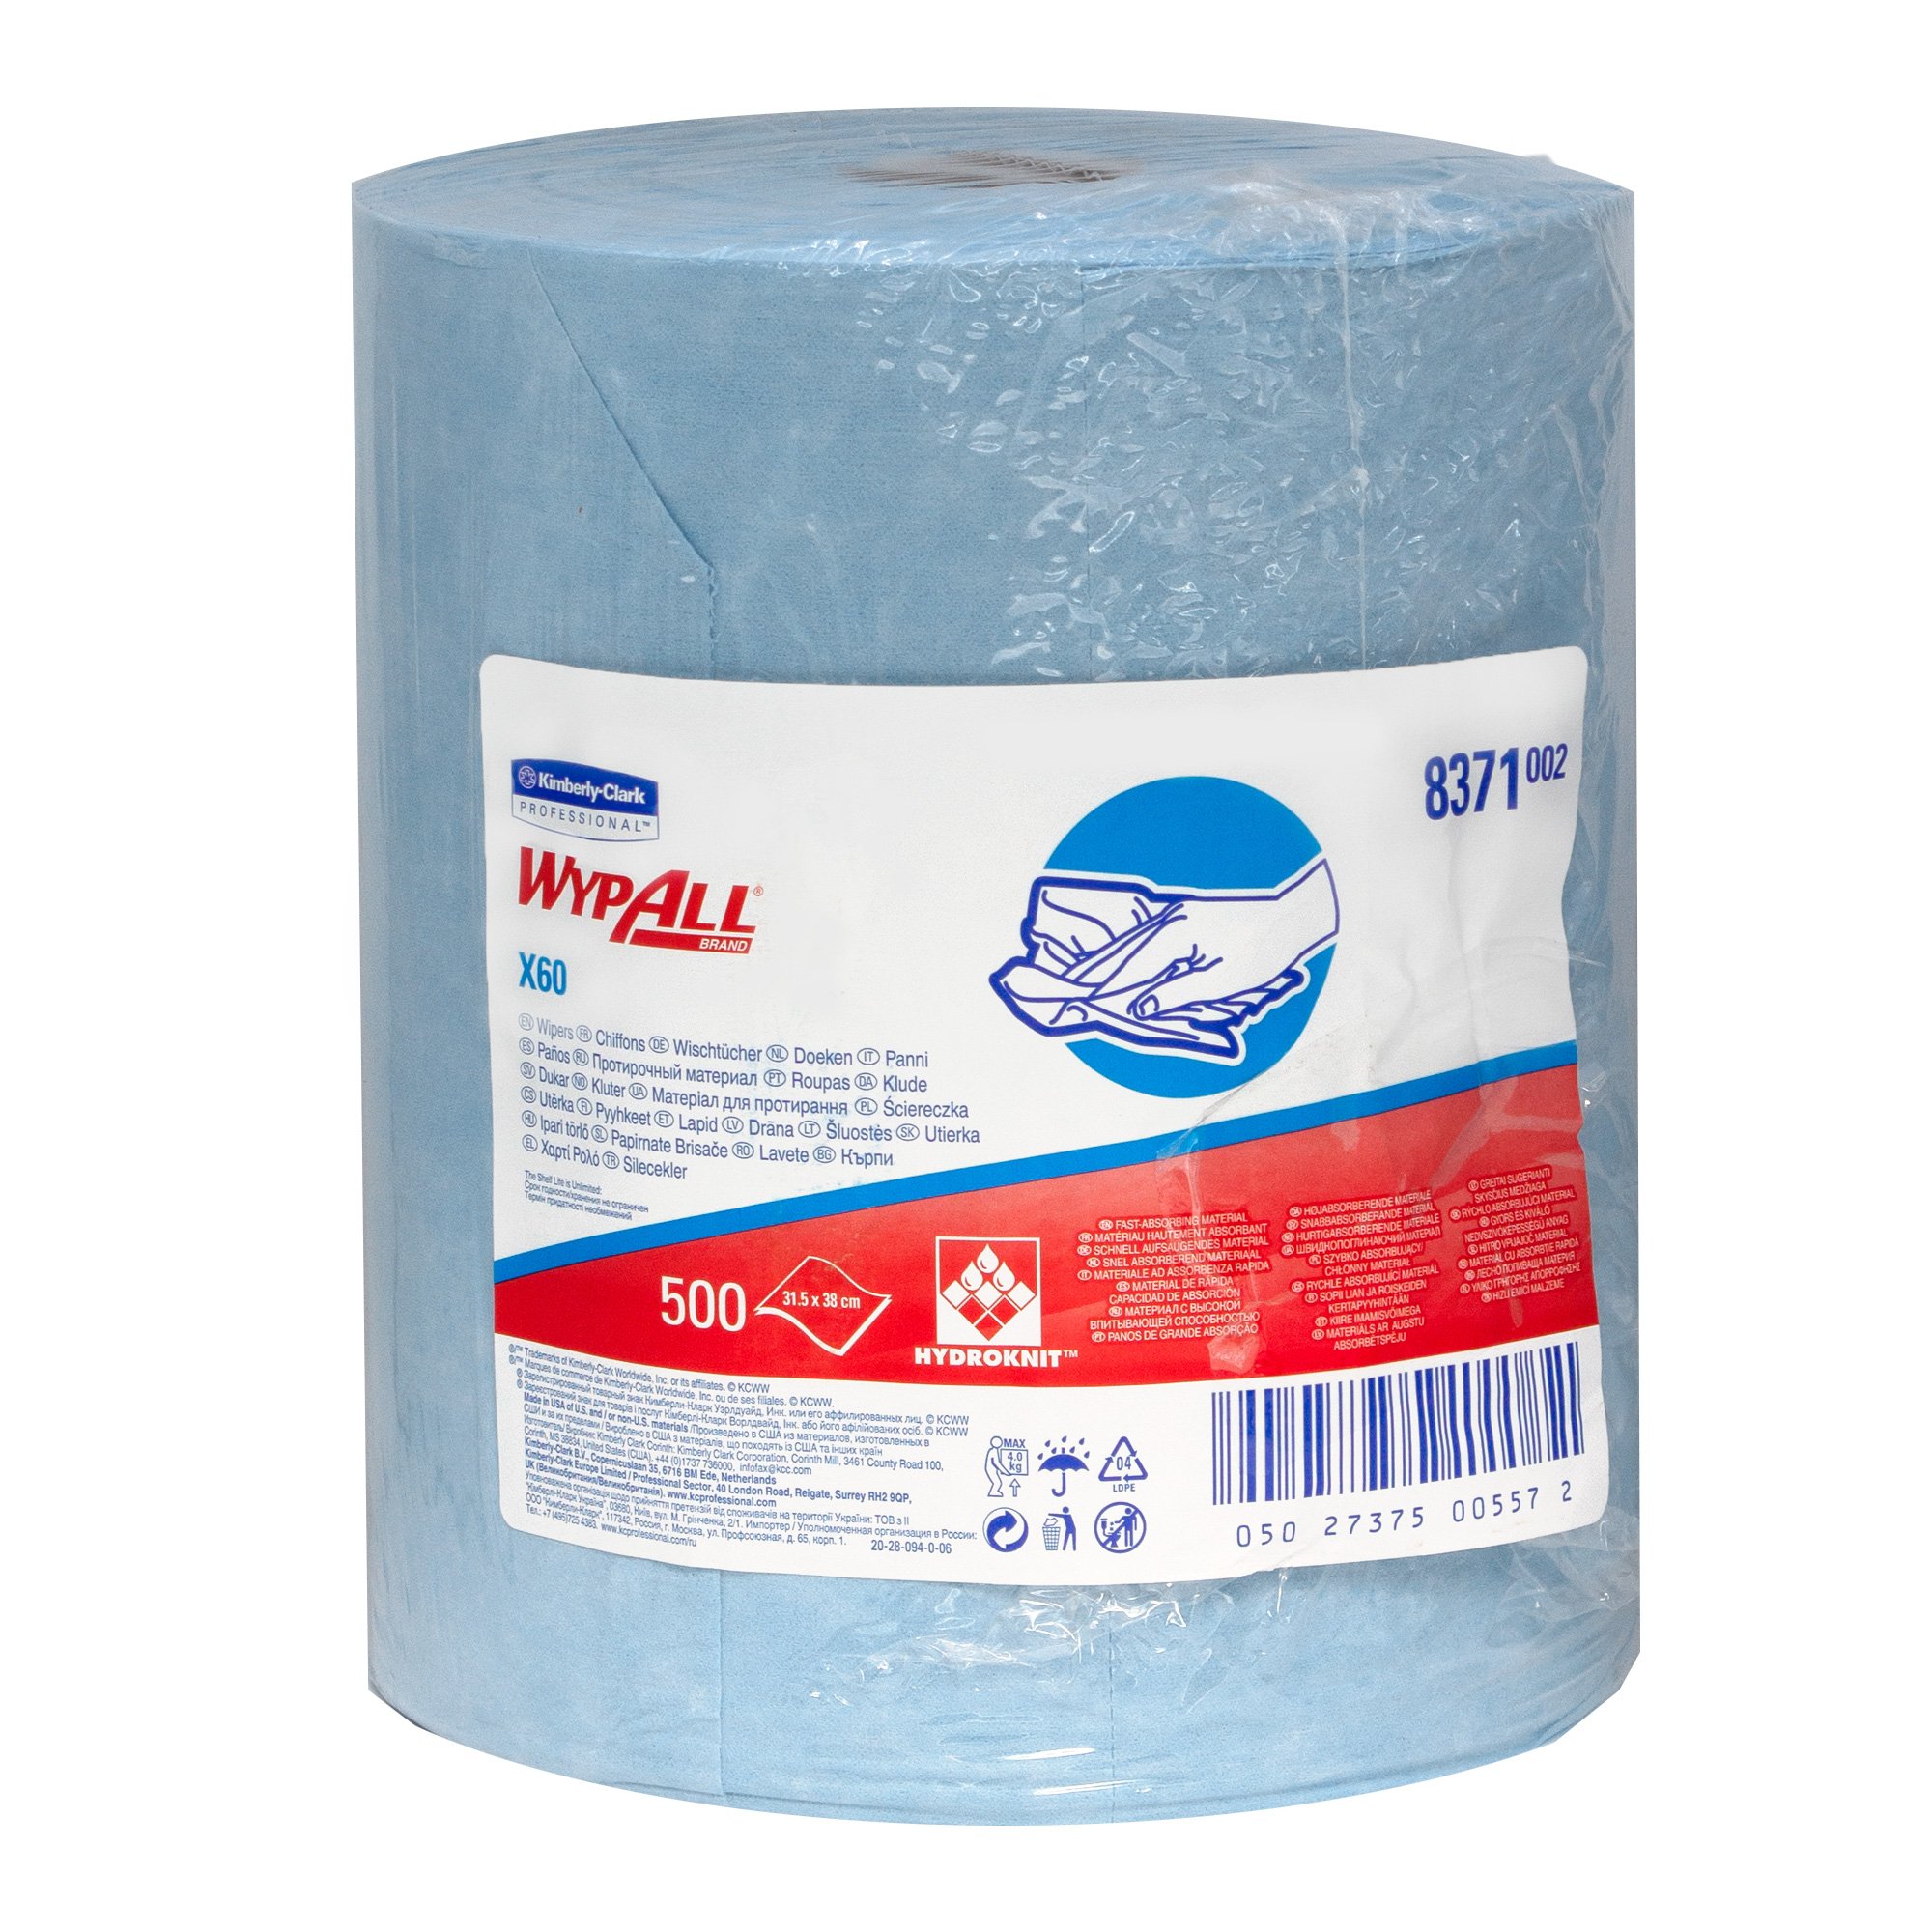 WypAll 8371 General Clean Wischtücher Großrolle X60 blau 1-lagig, 31,5 cm breit, 500 Tücher